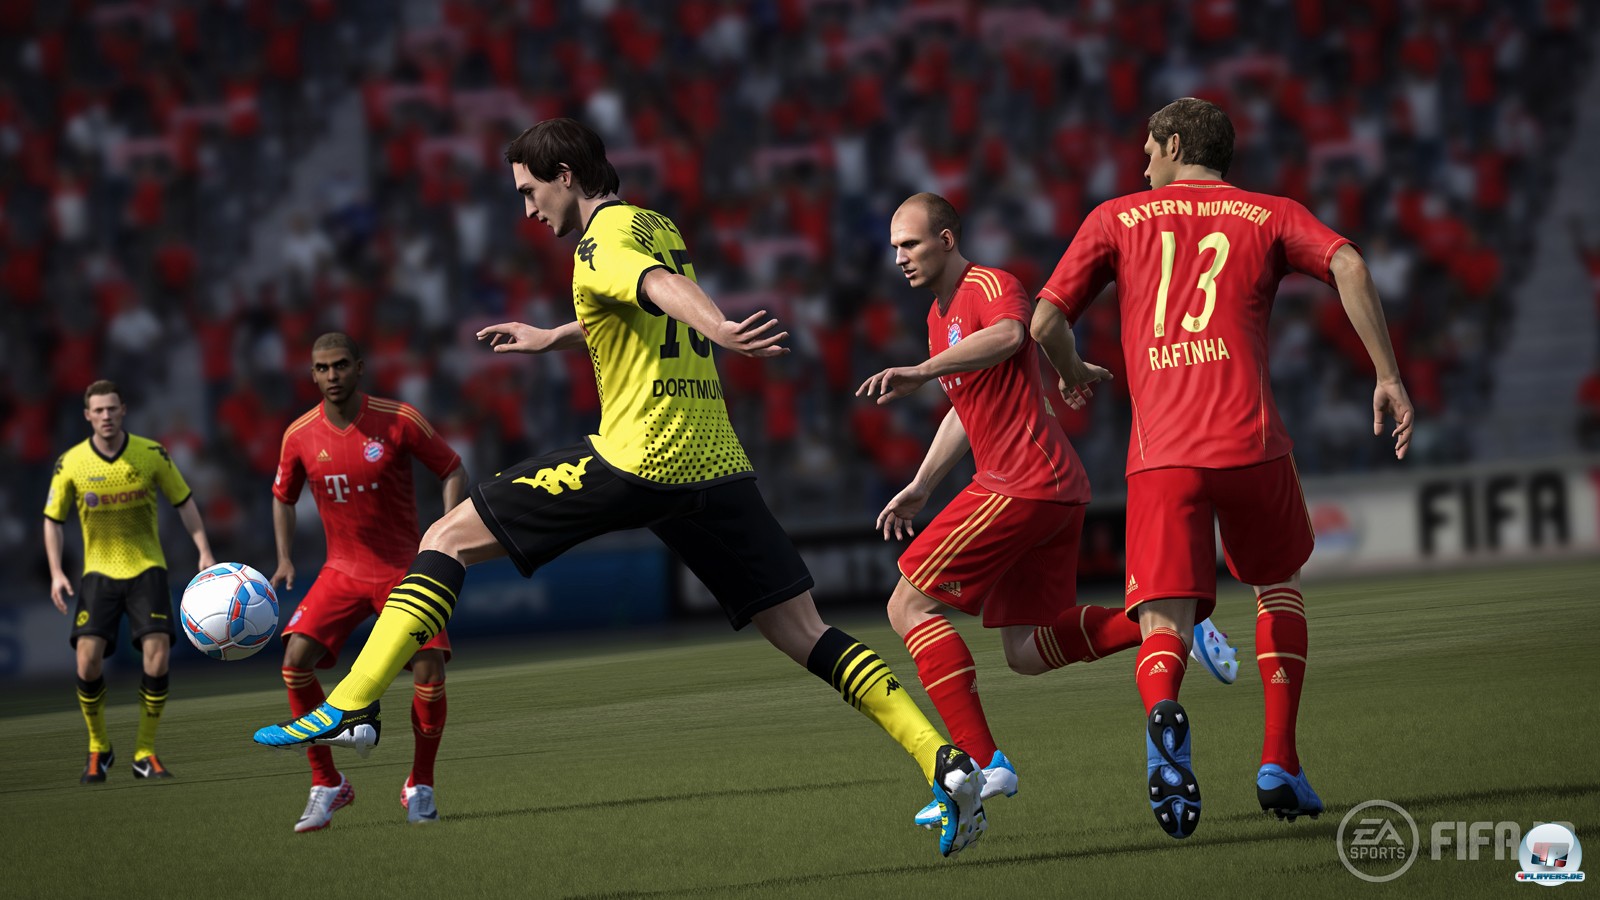 Tolle Atmosphäre, starkes Lizenzpaket: FIFA 12 lässt die Bundesliga lebendig werden.